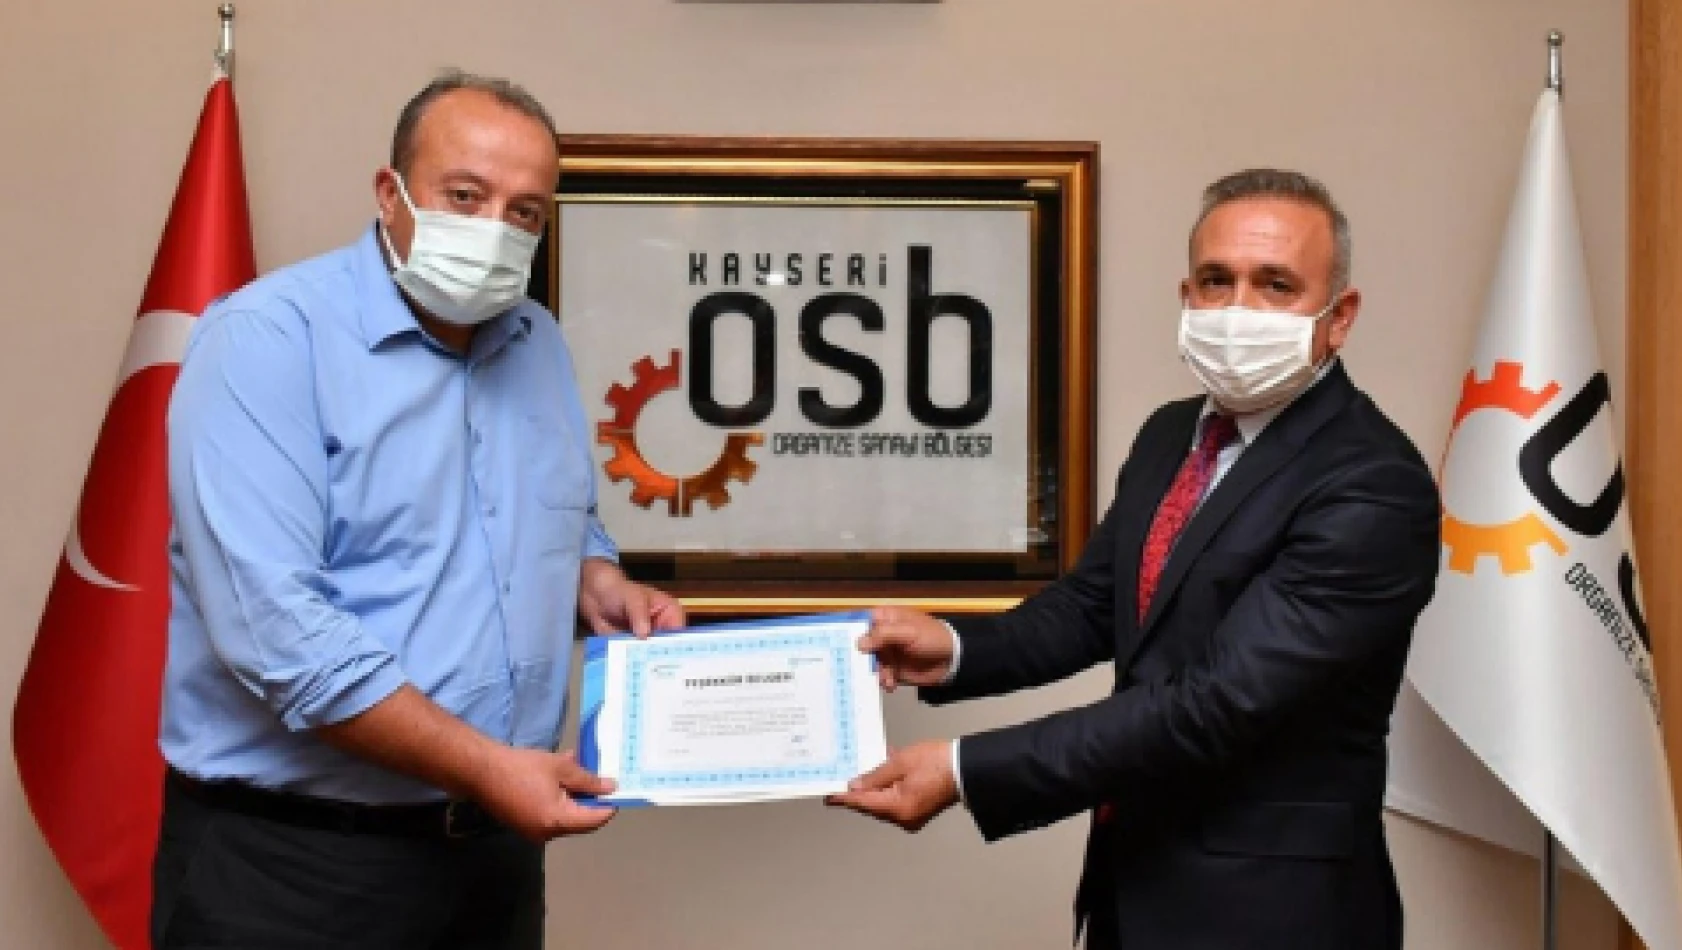 SGK'dan Kayseri OSB'ye teşekkür